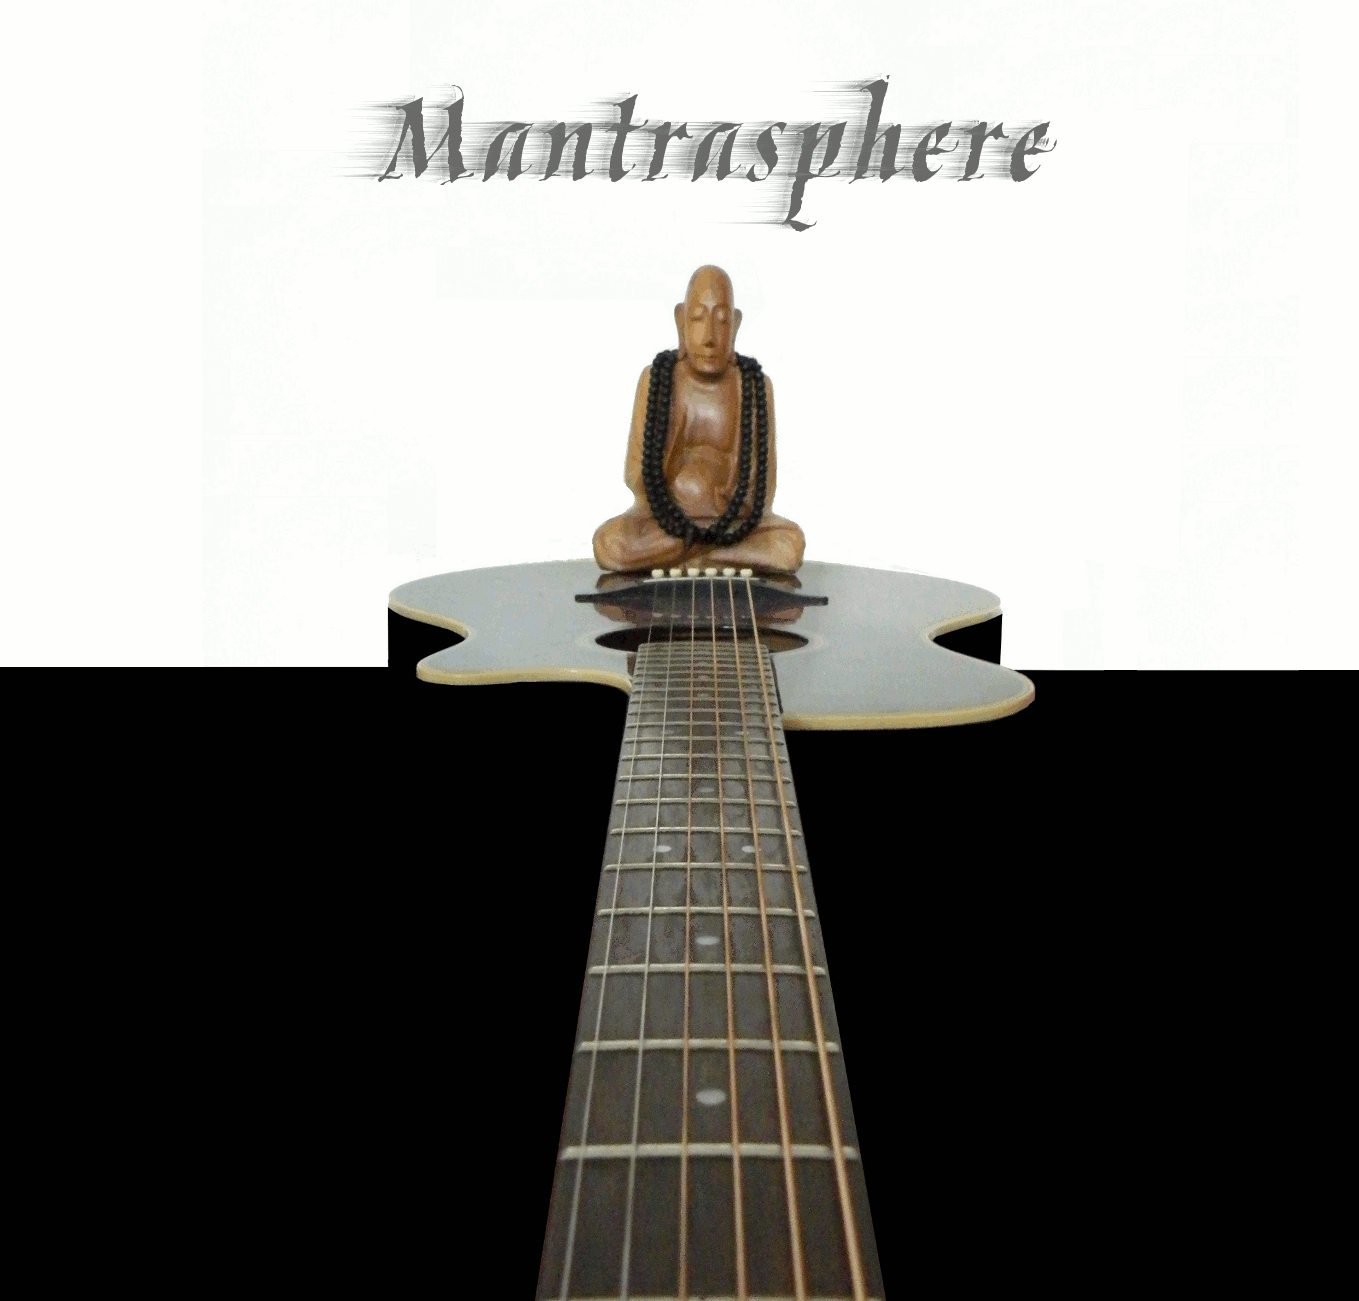 Mantrasphere album cover